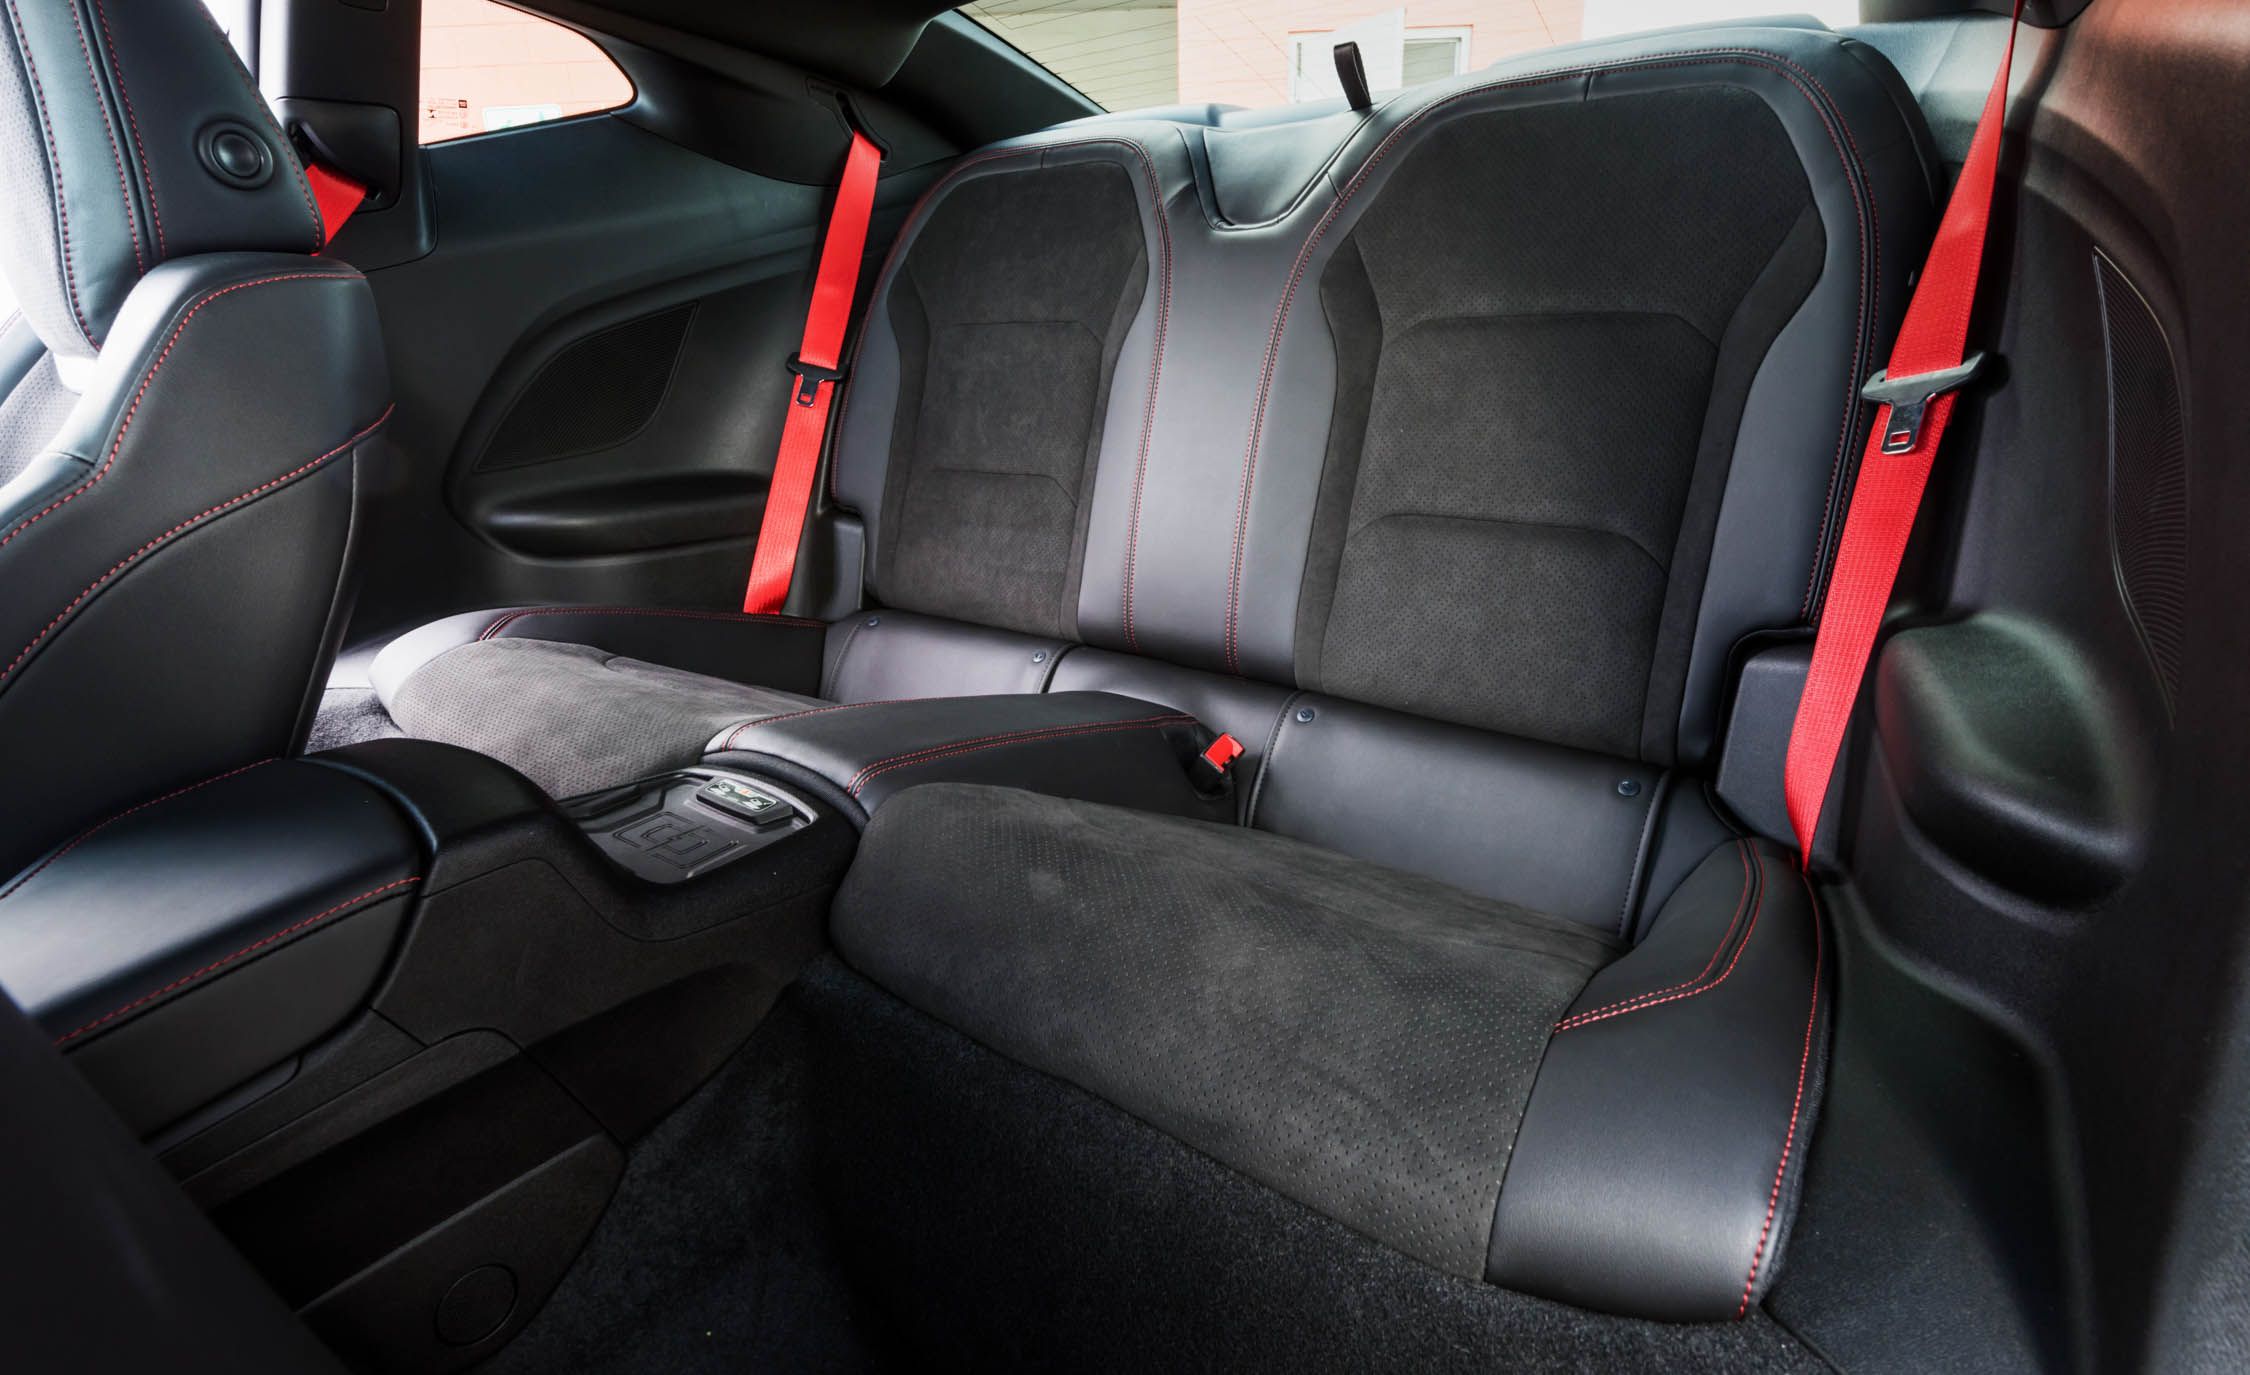 2017 Chevrolet Camaro ZL1 Interior Seats Rear (View 32 of 62)